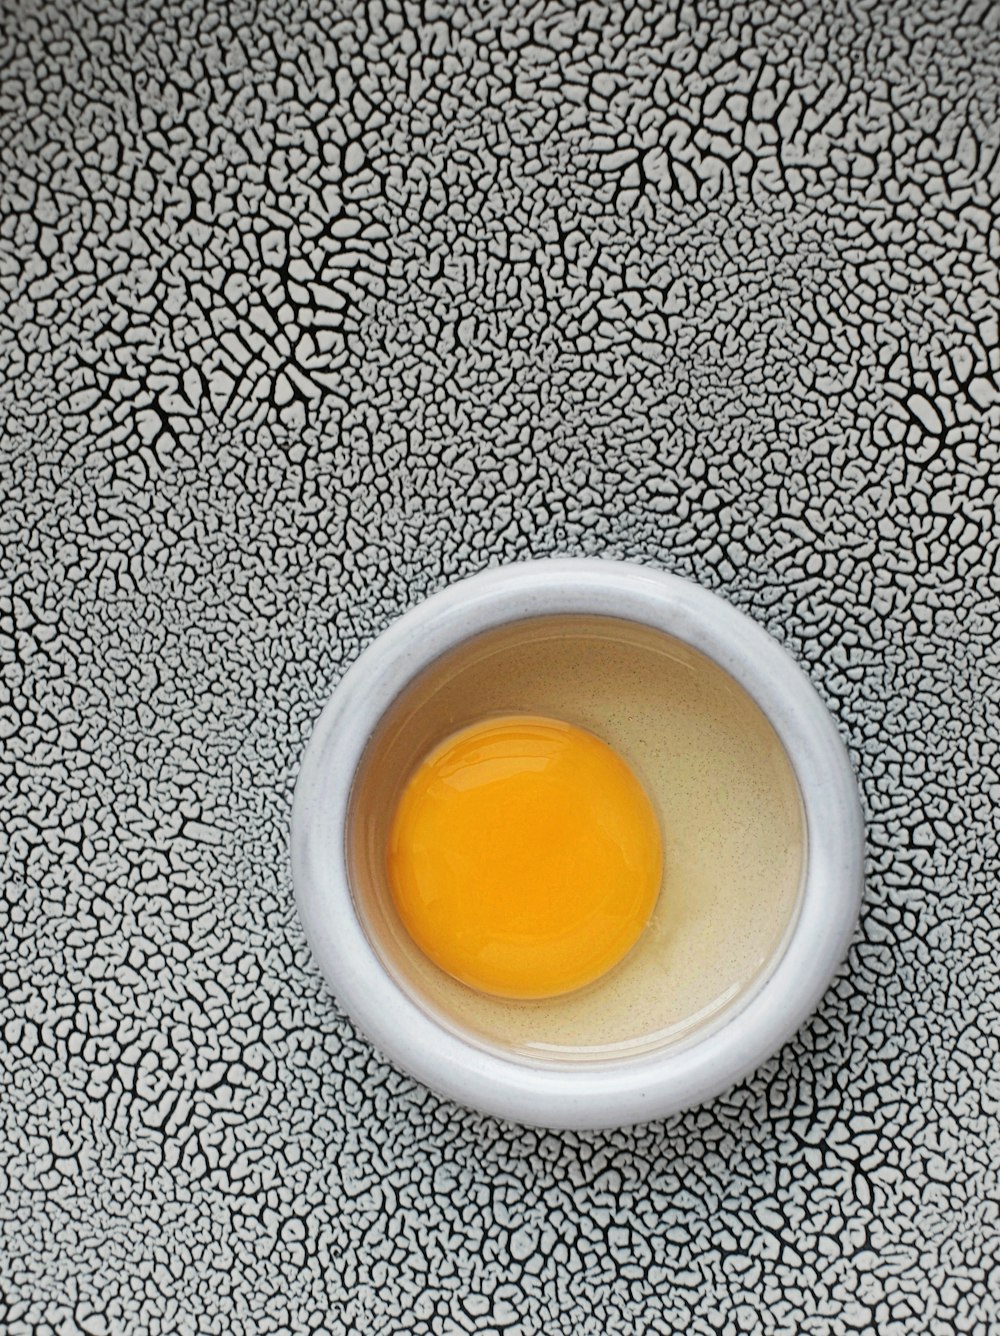 둥근 흰색 그릇에 달걀 노른자